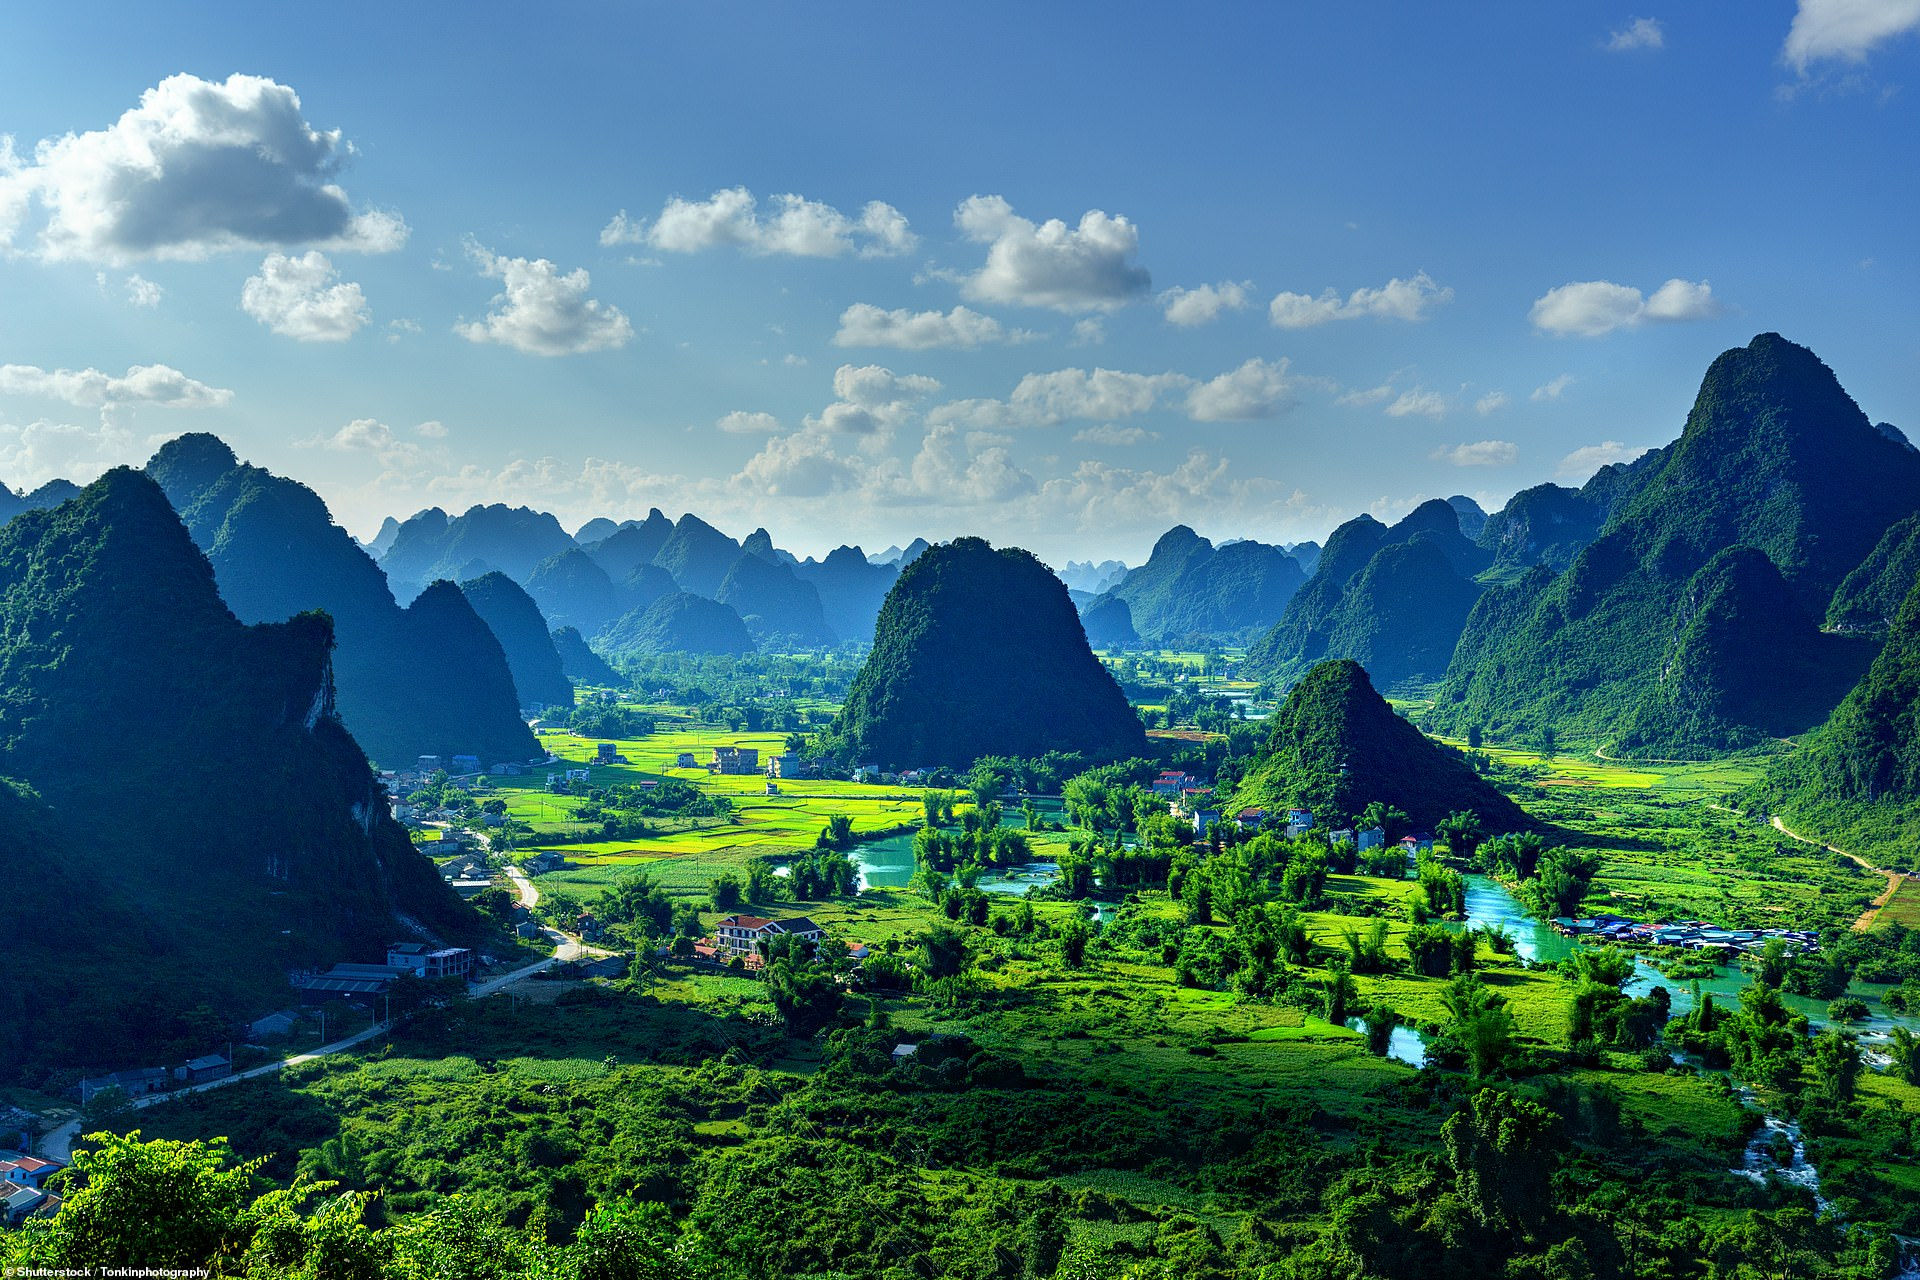 Một bức tranh phong cảnh tuyệt đẹp với những ngọn núi và cánh đồng lúa ở huyện Trùng Khánh, tỉnh Cao Bằng, Việt Nam. Nơi đây nổi tiếng với đặc sản hạt dẻ Trùng Khánh nhờ điều kiện không khí mát lành cùng thổ nhưỡng trong lành quanh năm.